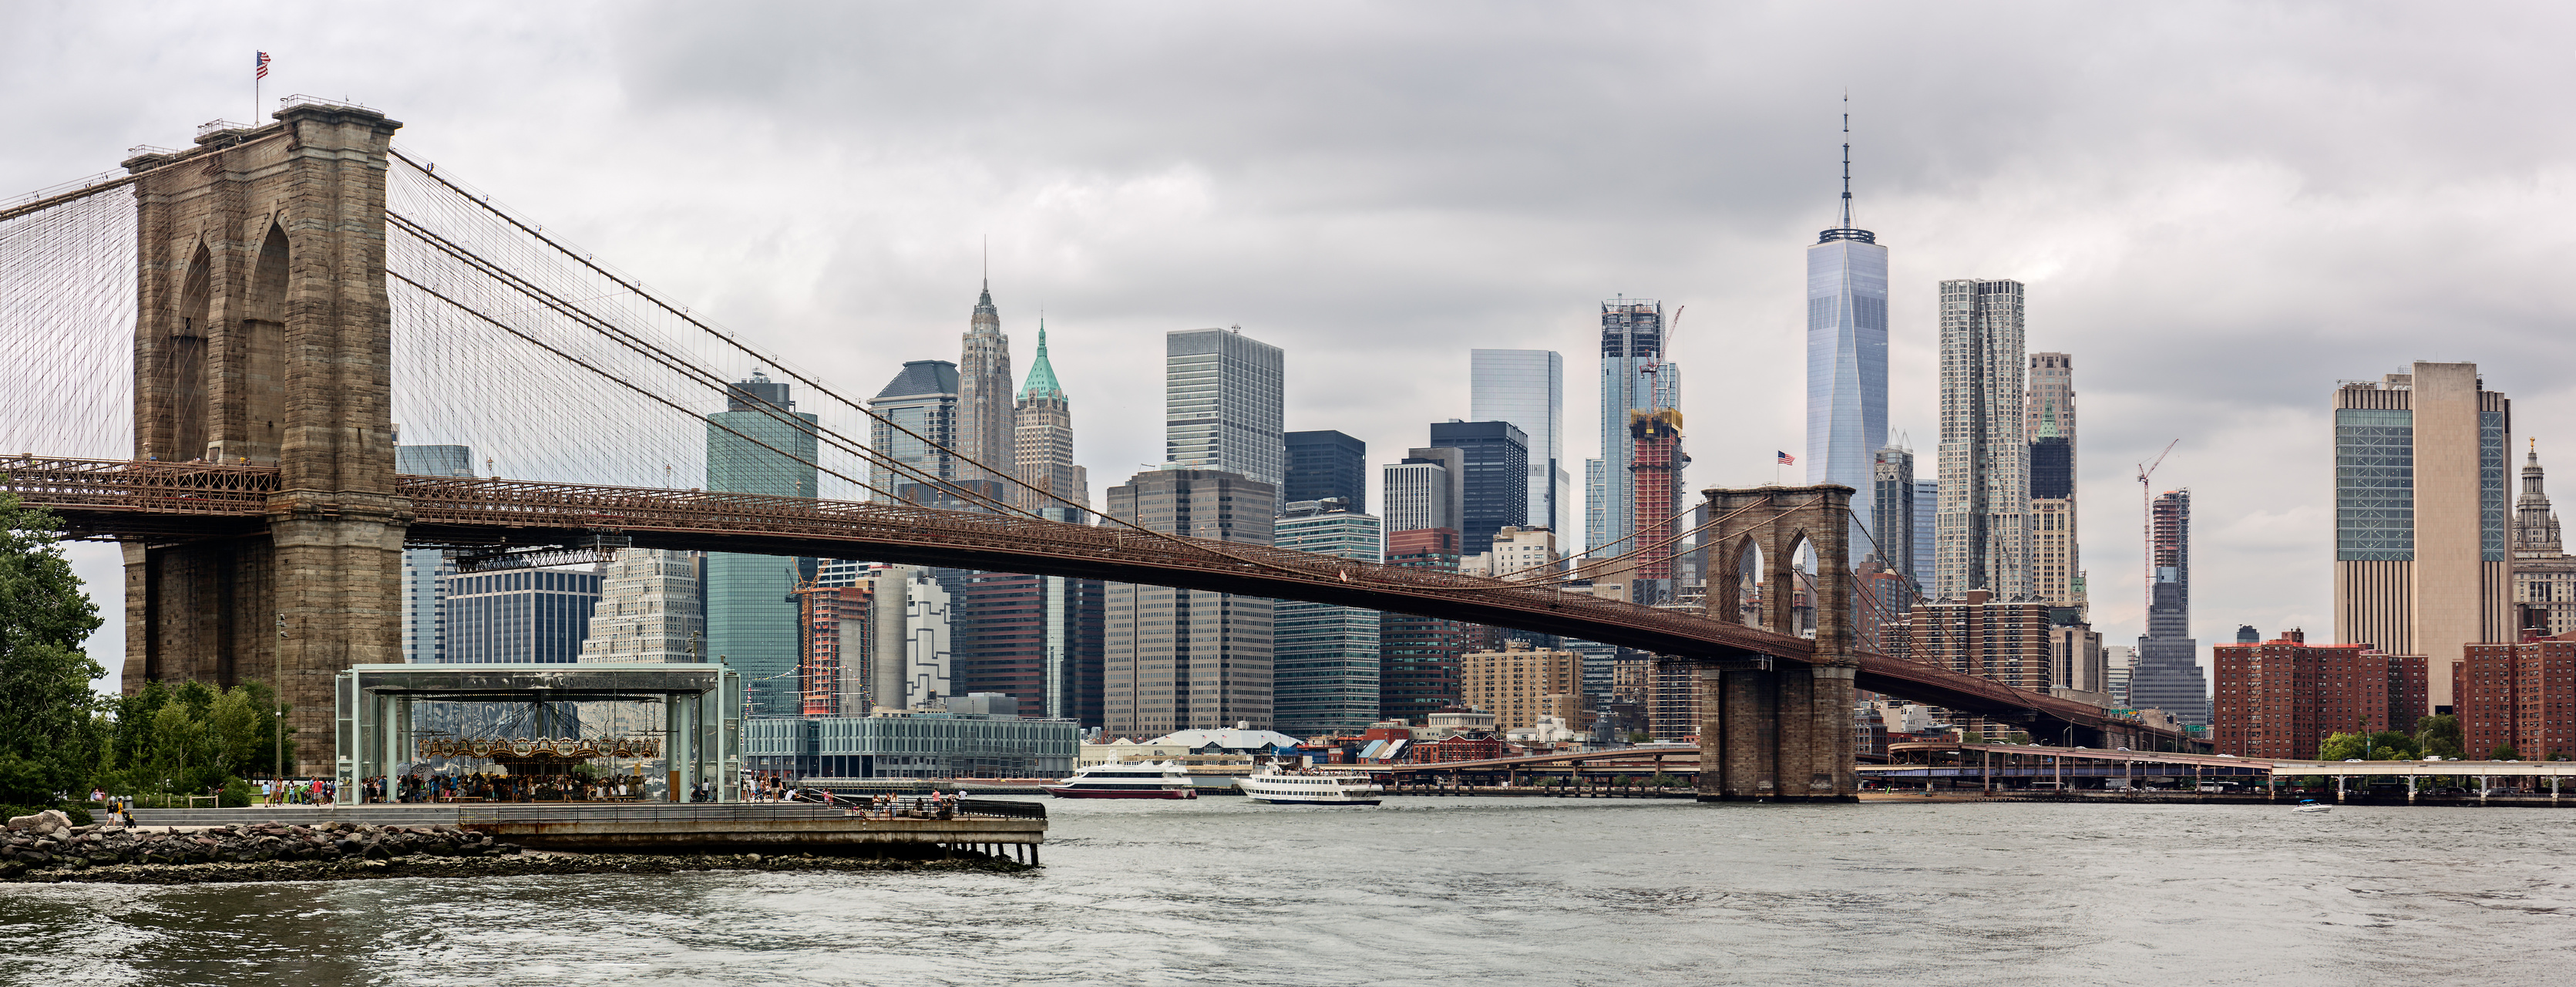 Brooklyn Bridge Panorama, NYC, USA